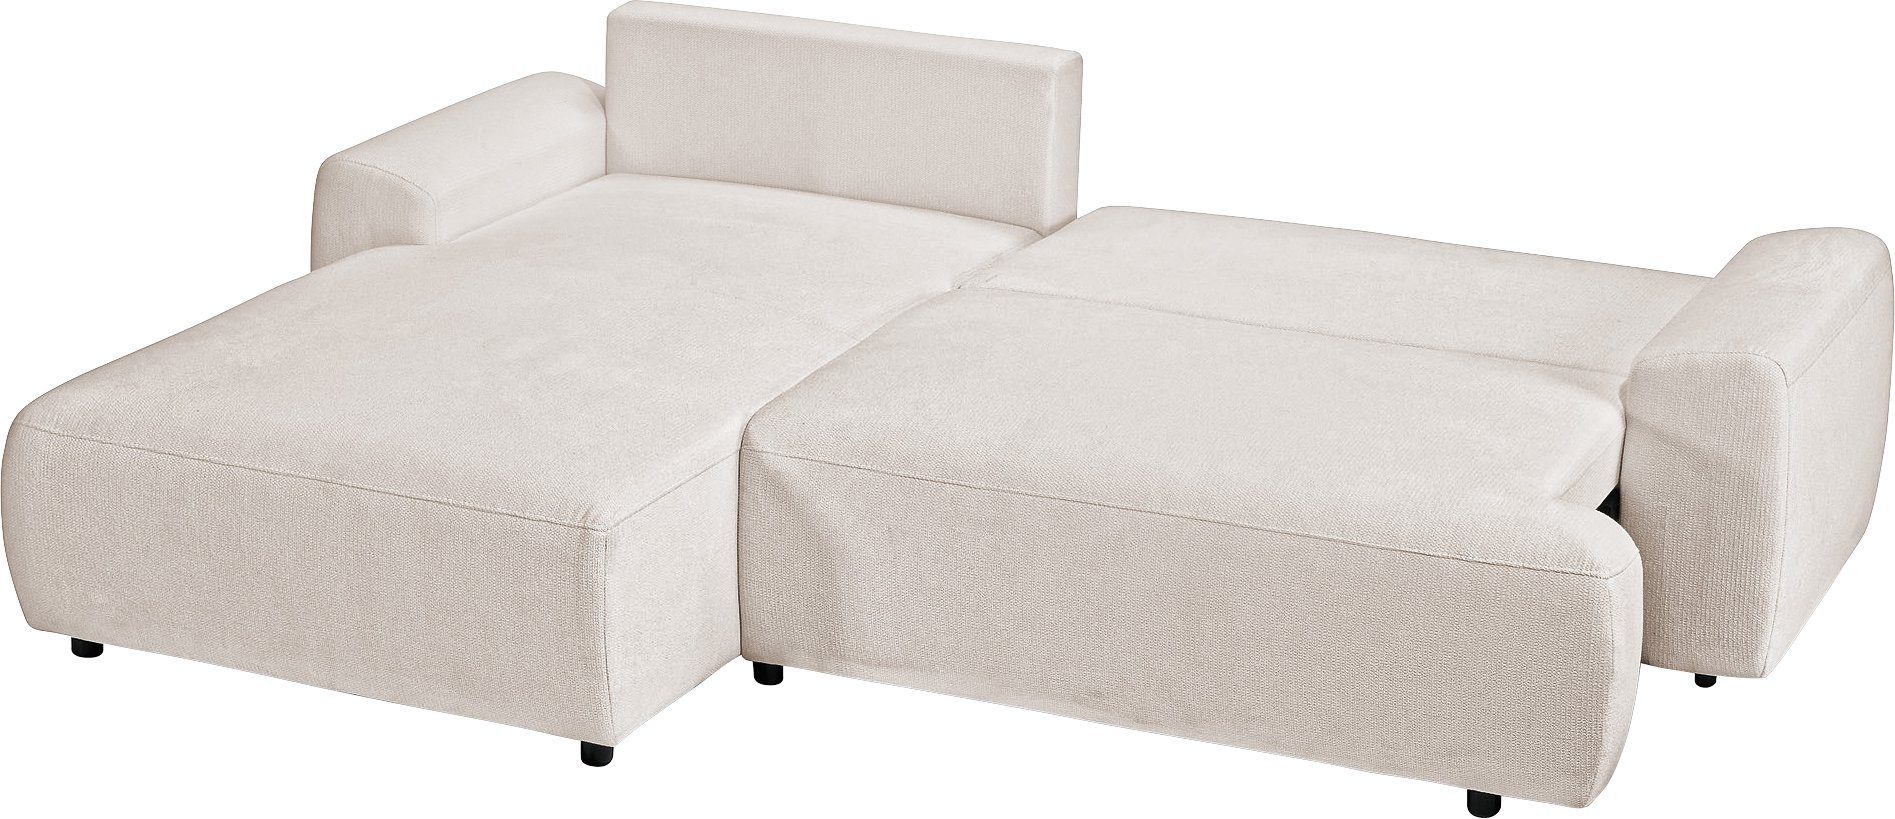 Teile, - 2 sofa exxpo Bettkasten in inklusive Bettfunktion fashion und Ecksofa, Bezug, angenehmen